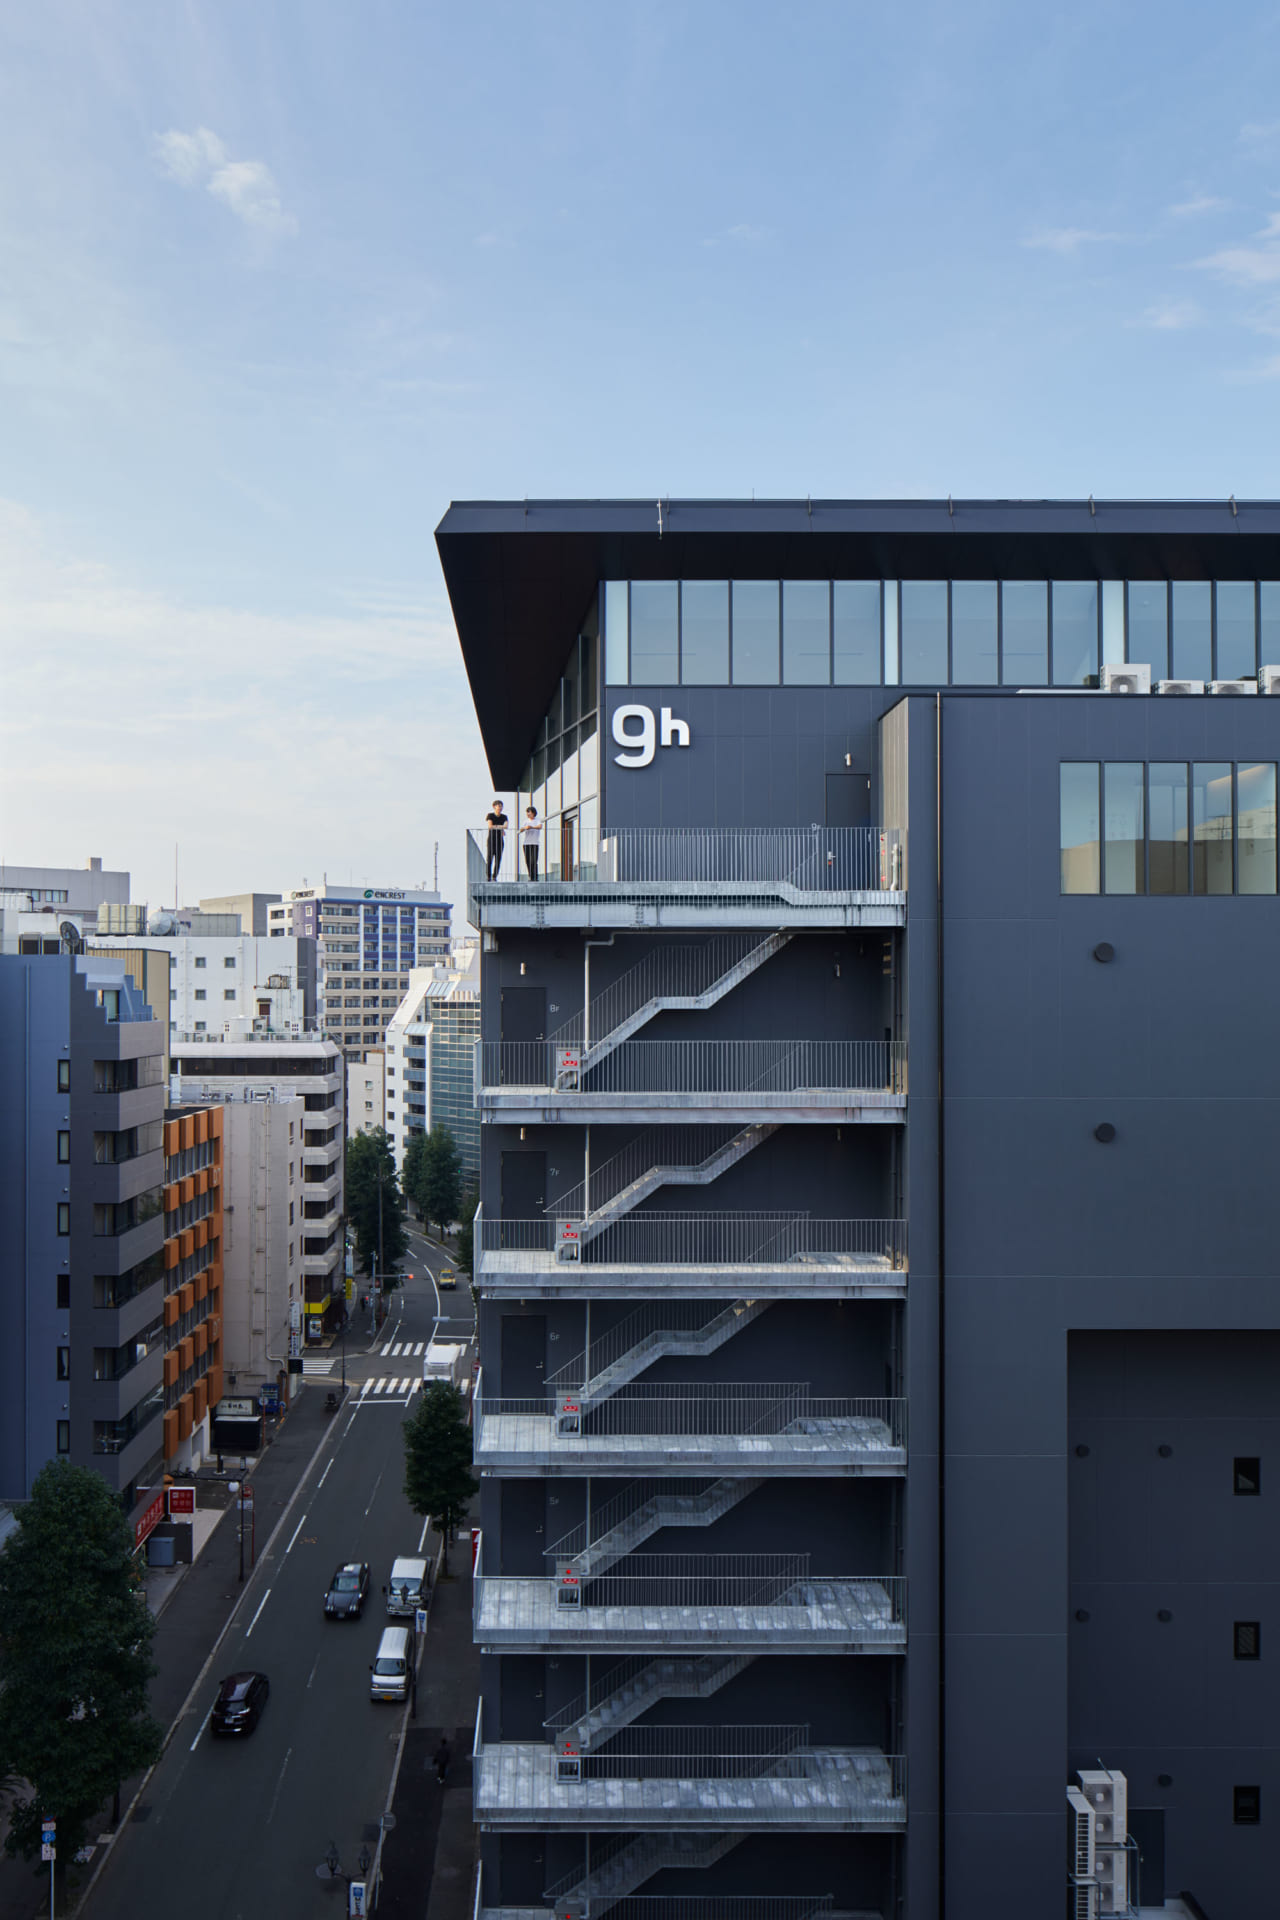 芦沢啓治がカプセルホテル「ナインアワーズ 博多駅」を設計
ミニマルと開放感を同時に提供